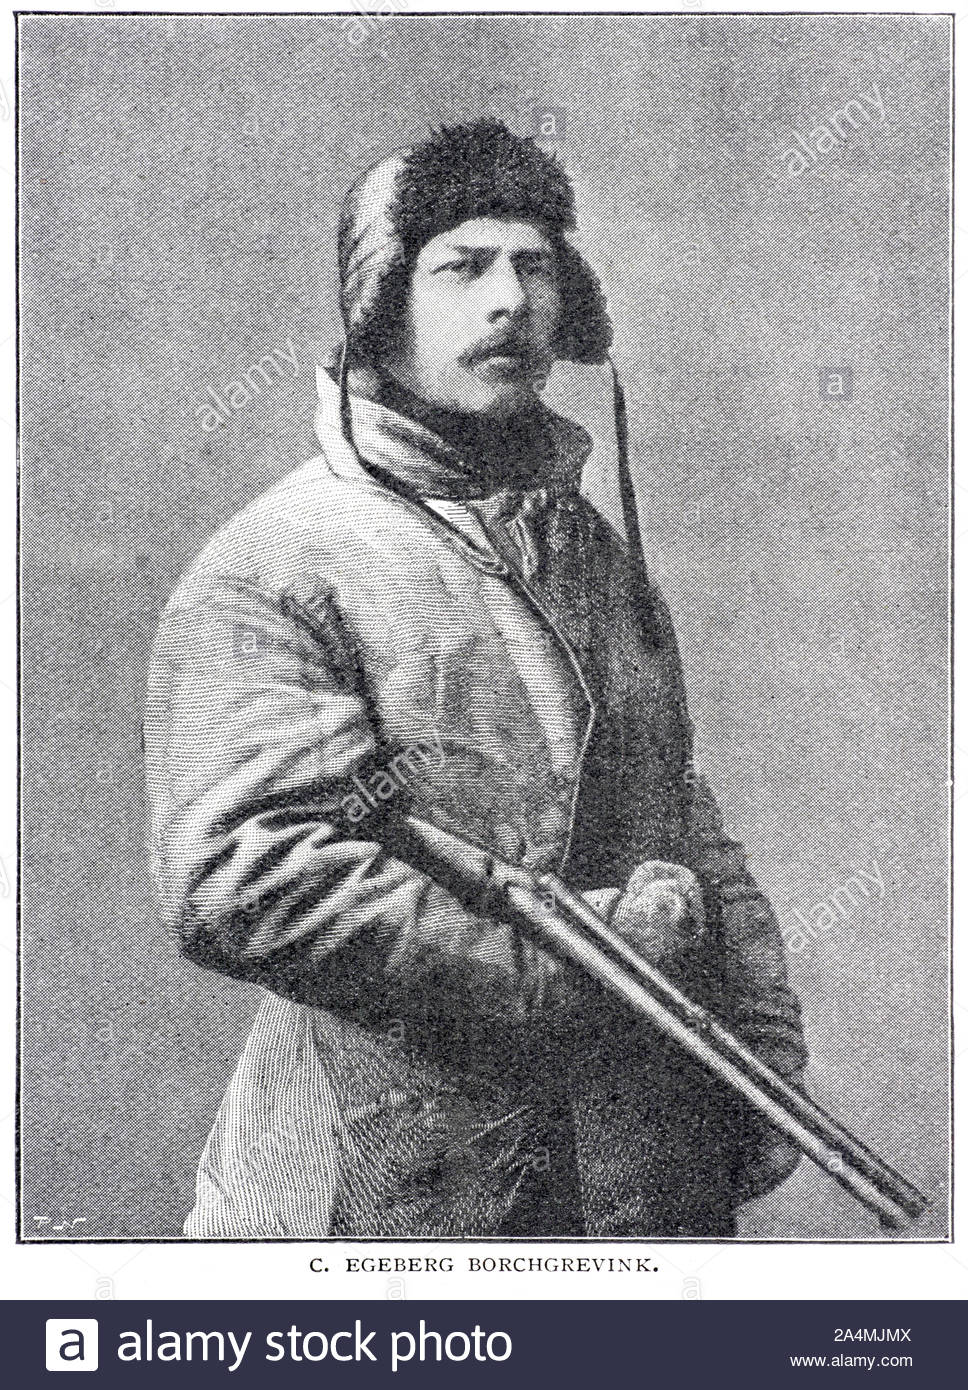 Carsten Egeberg Borchgrevink portrait, 1864 - 1934, était un explorateur polaire Anglo-Norwegian et pionnier du voyage Antarctique moderne, illustration de 1897 vintage Banque D'Images